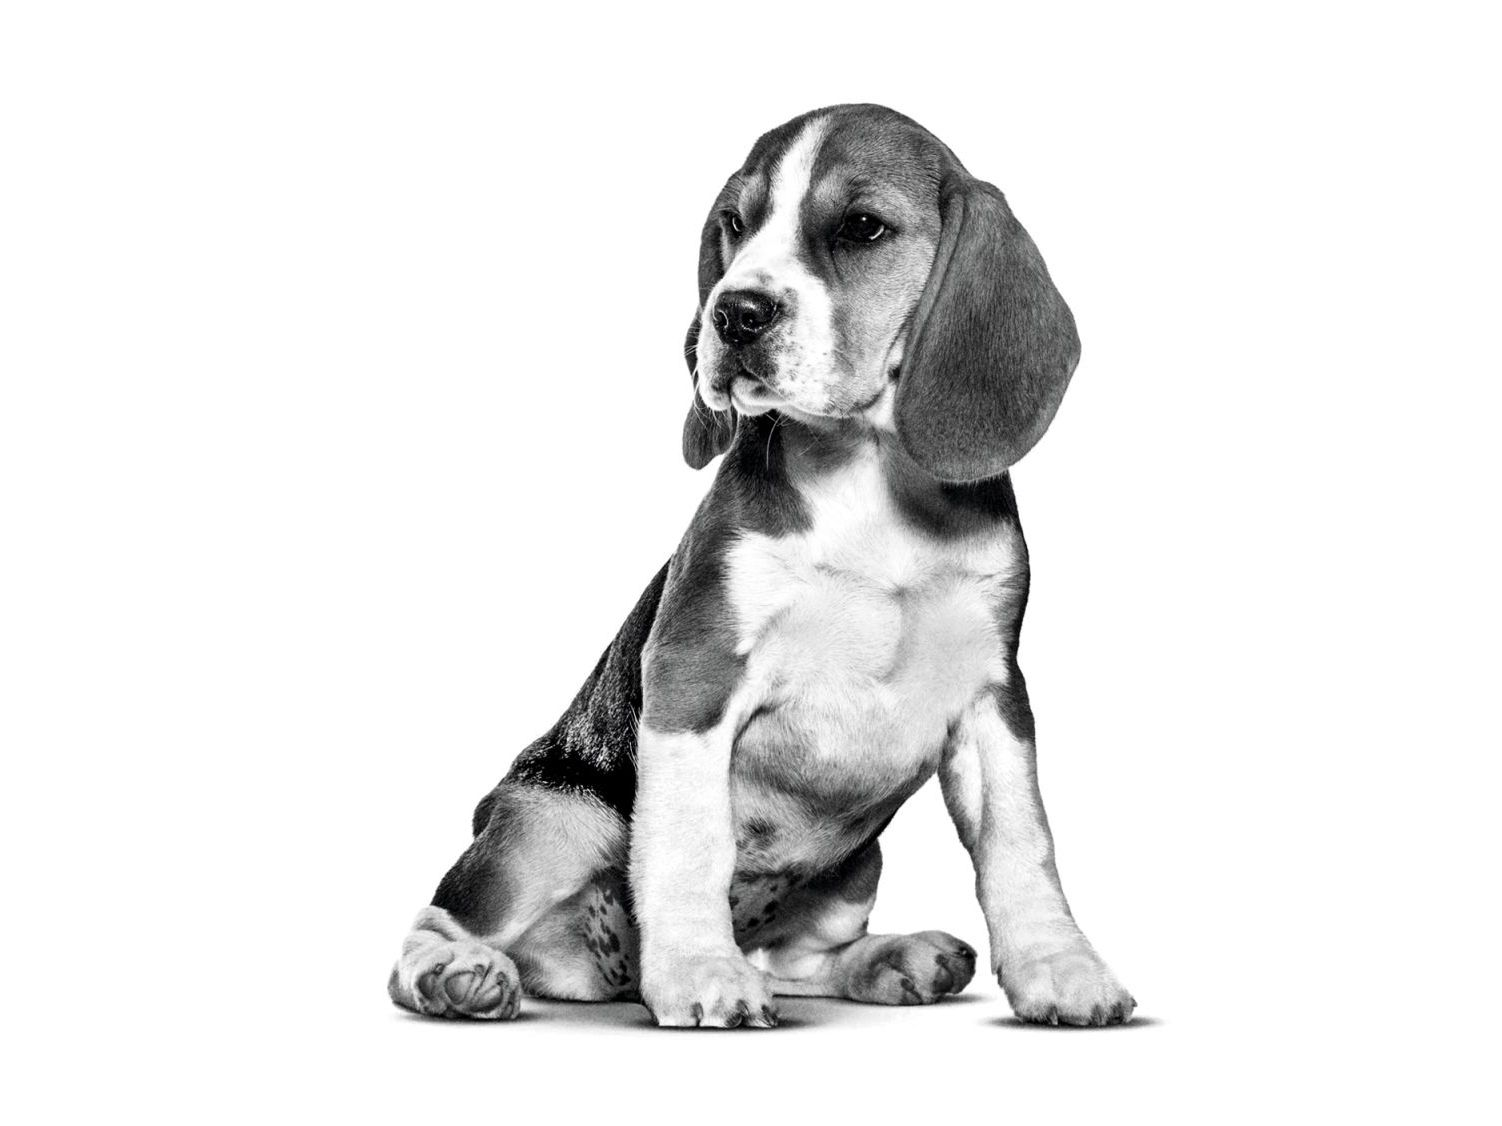 Cachorro de Beagle sentado en blanco y negro